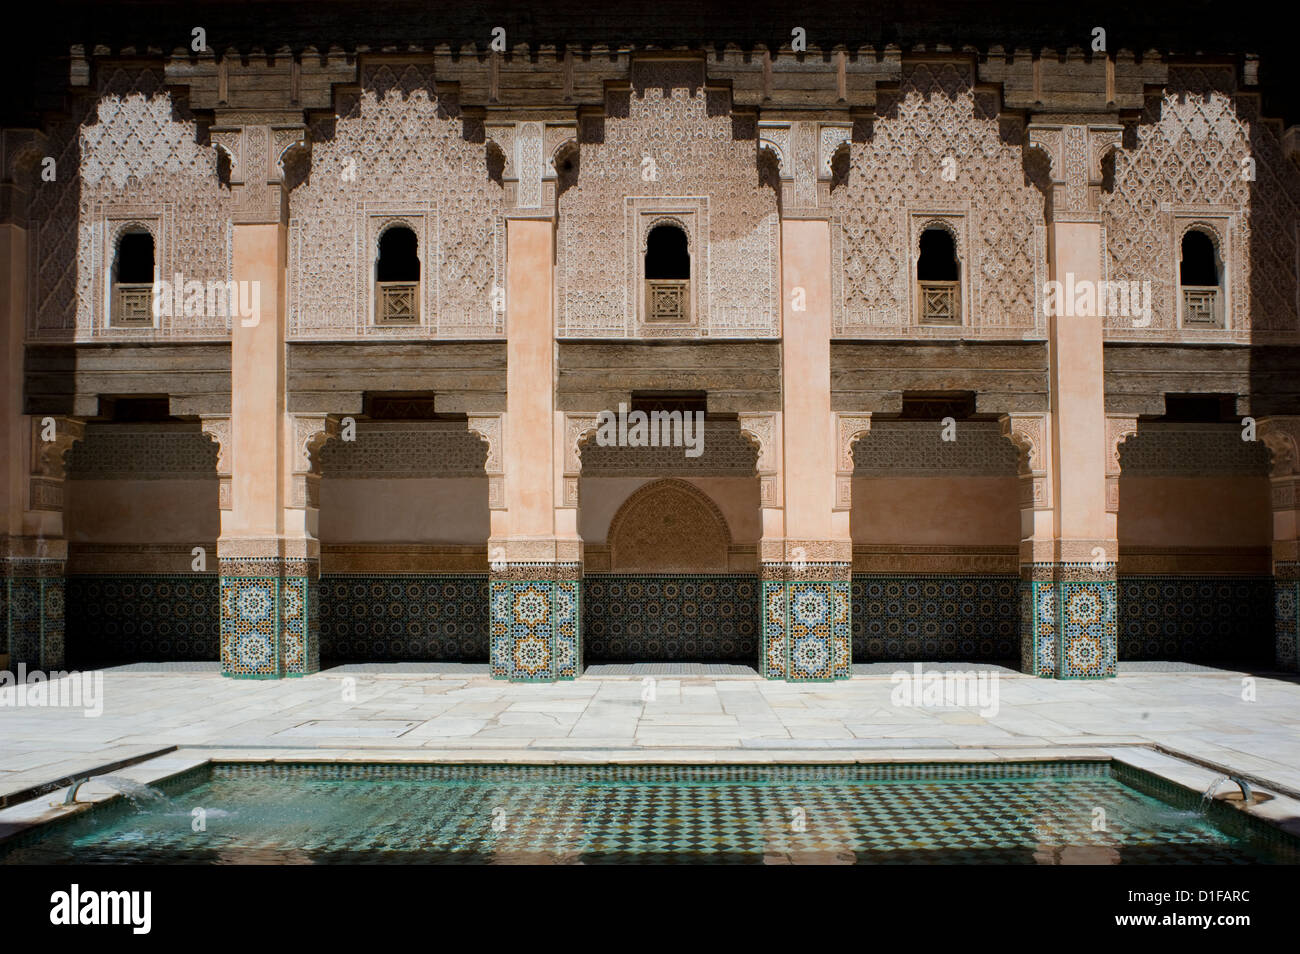 Un mosaico de patio interior y piscina reflectante en la madraza Ben Youssef, Marrakech, Marruecos, África del Norte, África Foto de stock